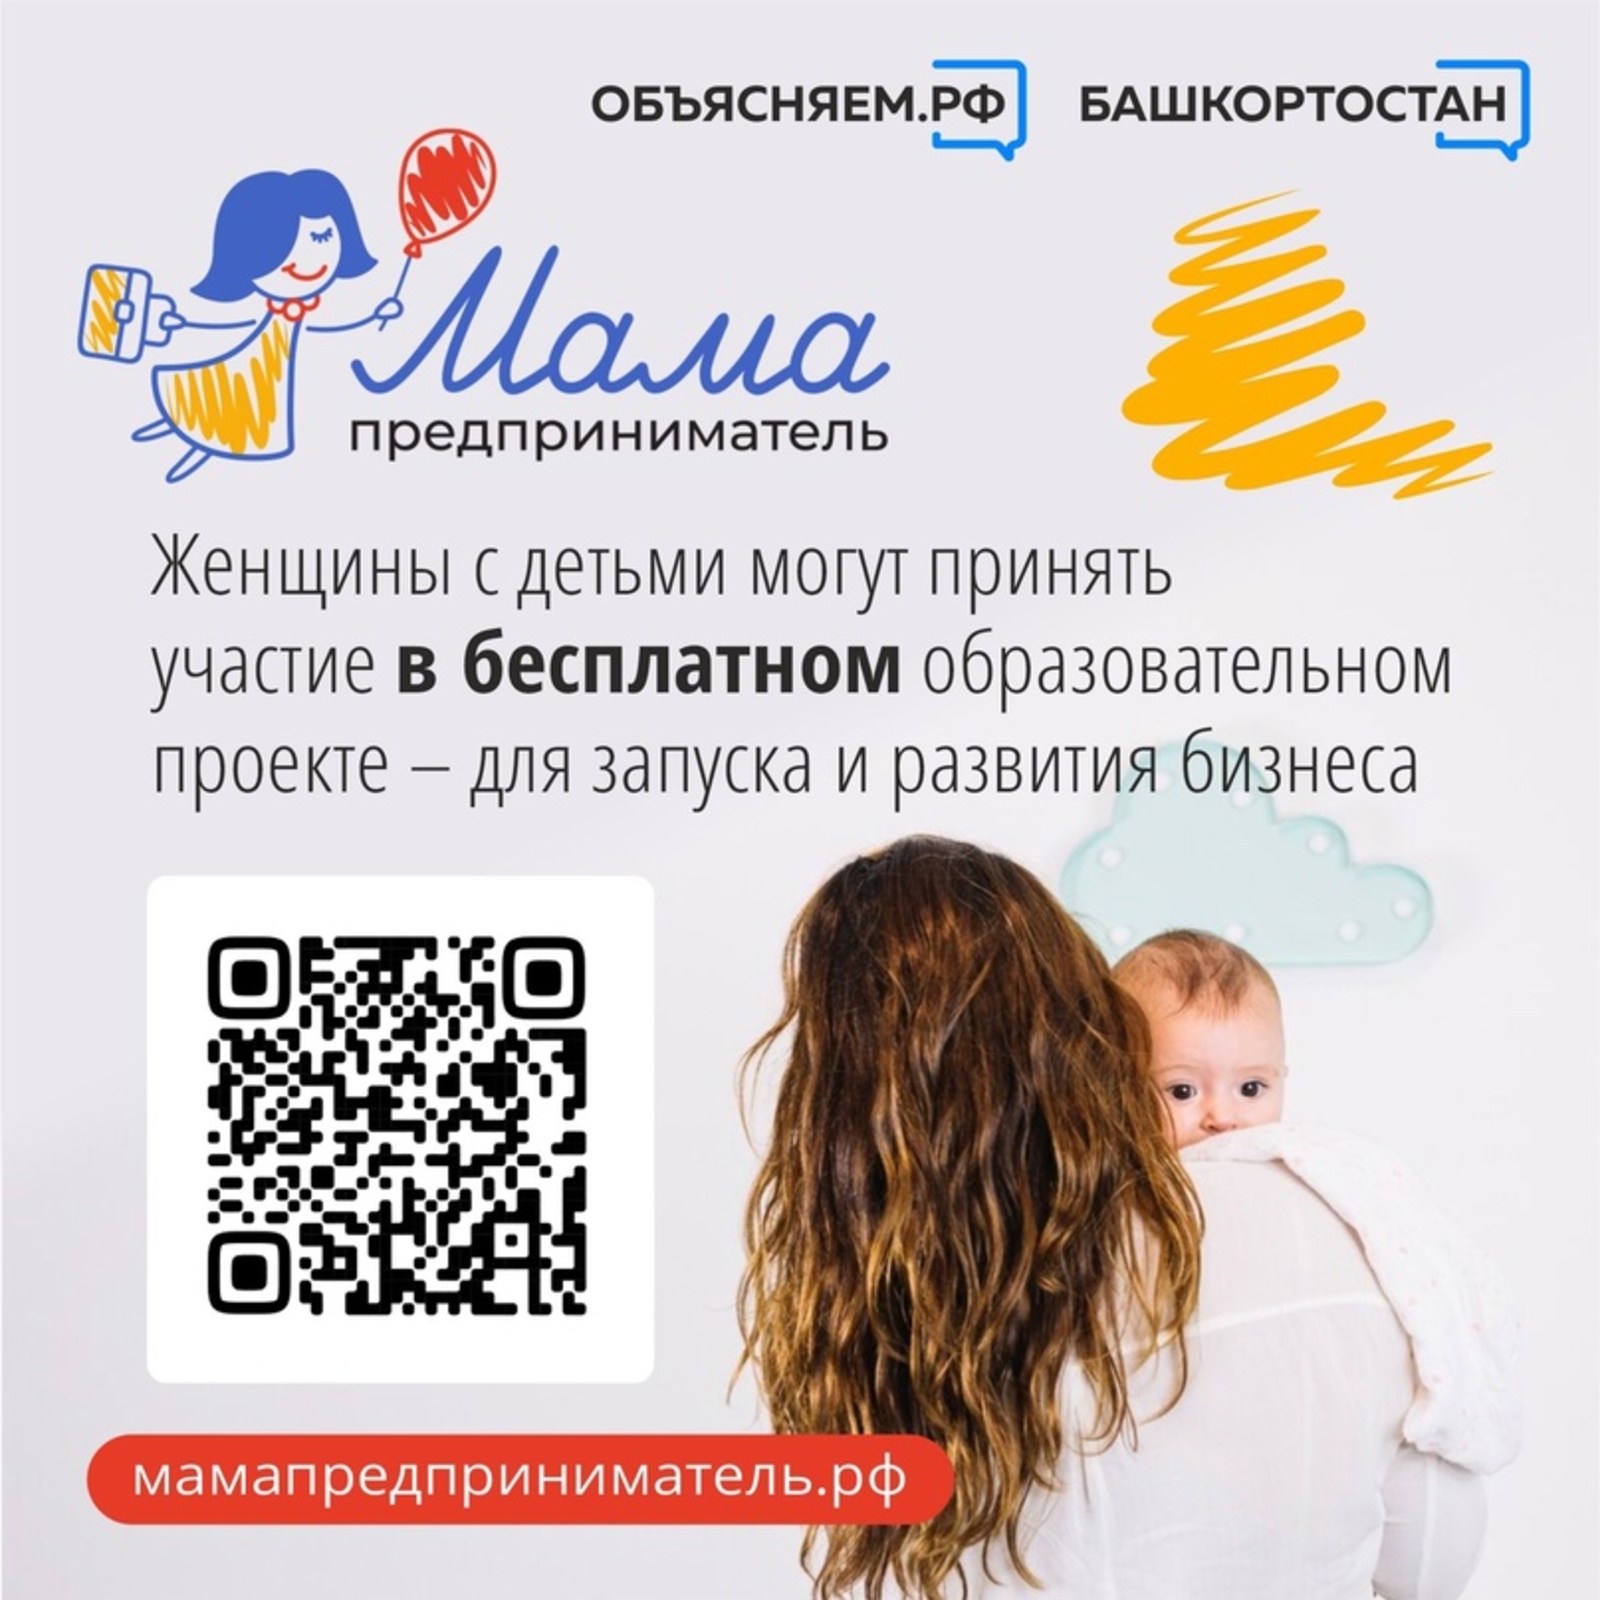 Женщины с детьми из Башкортостана могут принять участие в бесплатном образовательном проекте «Мама-предприниматель»